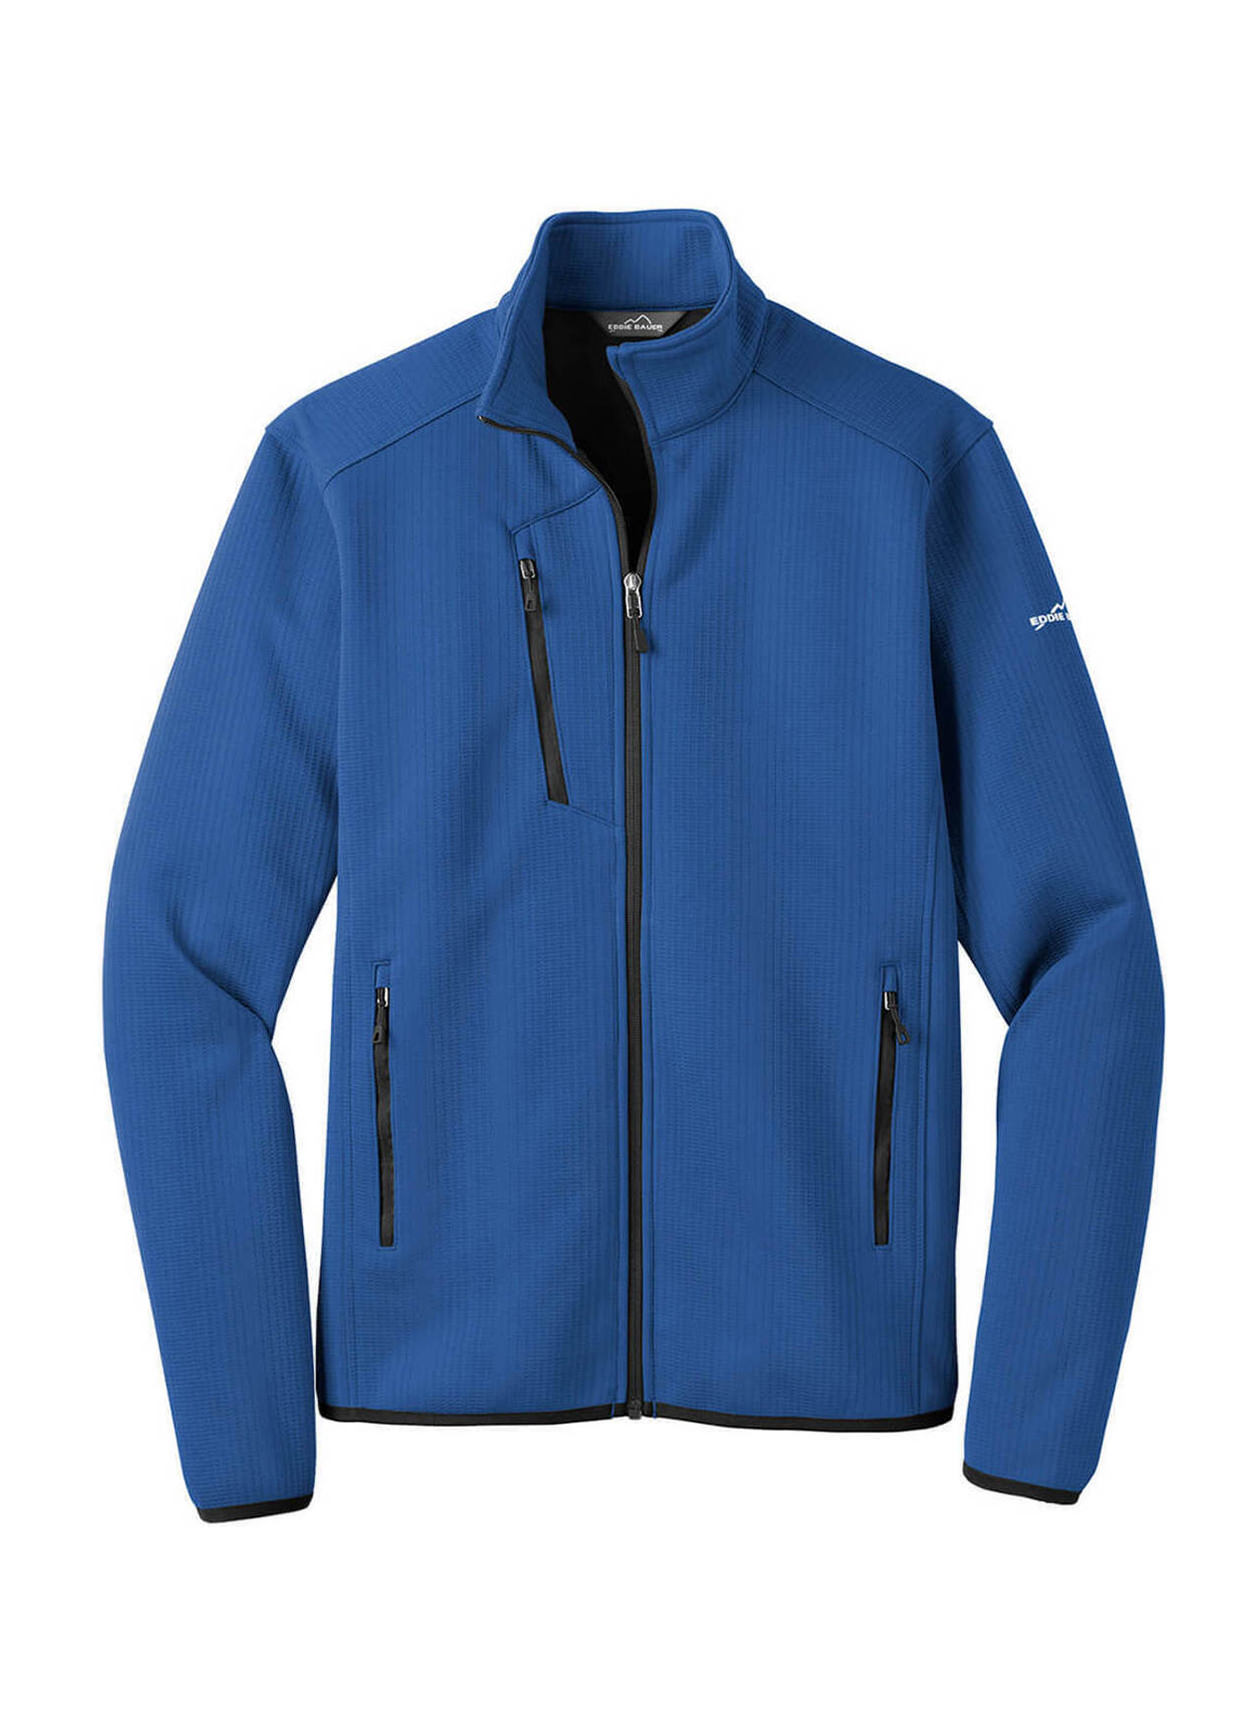 Eddie Bauer – Fleece-Lined Jacket. EB520 – Dynasty Custom